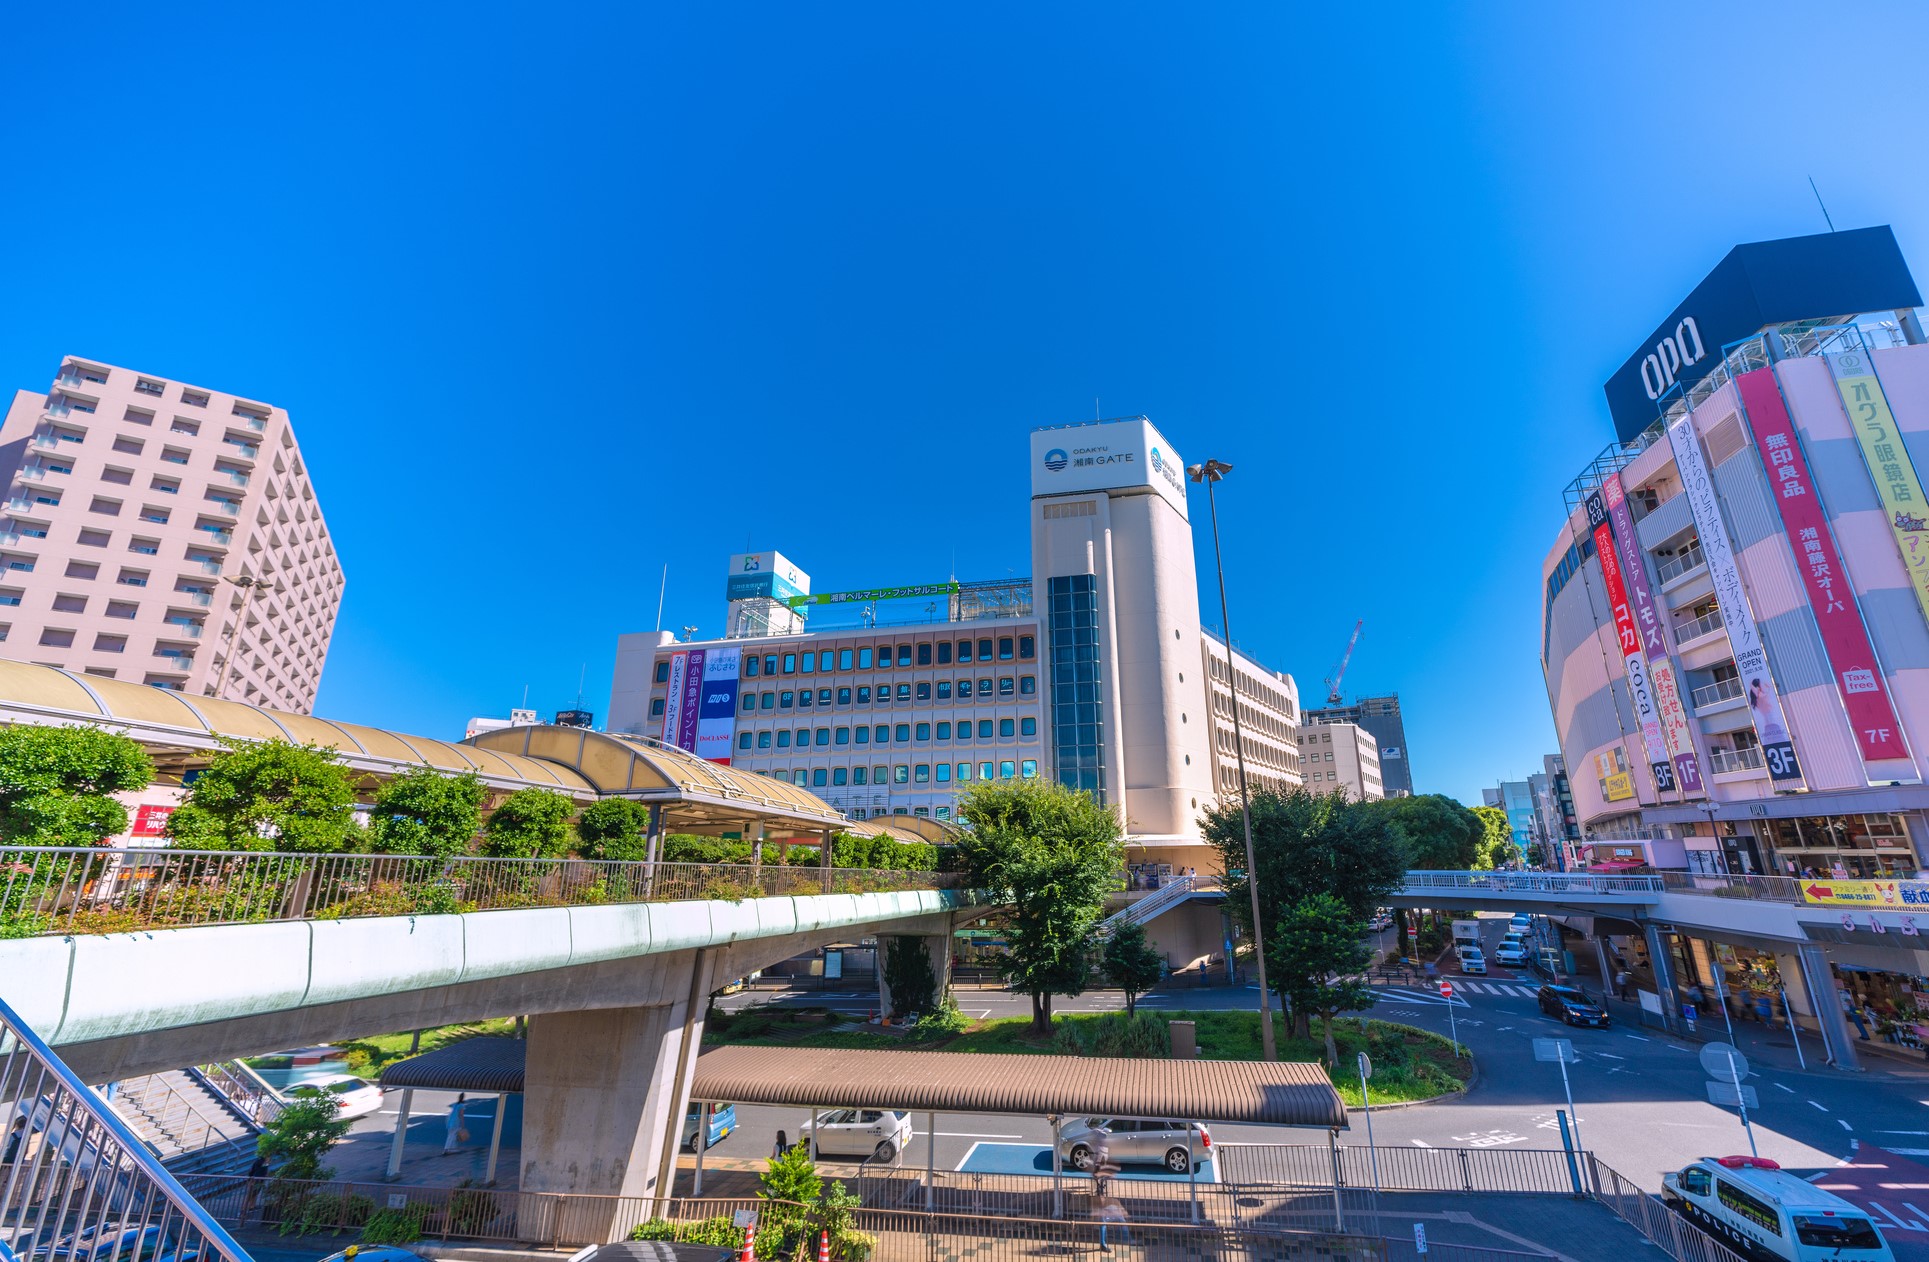 神奈川県藤沢駅前の風景